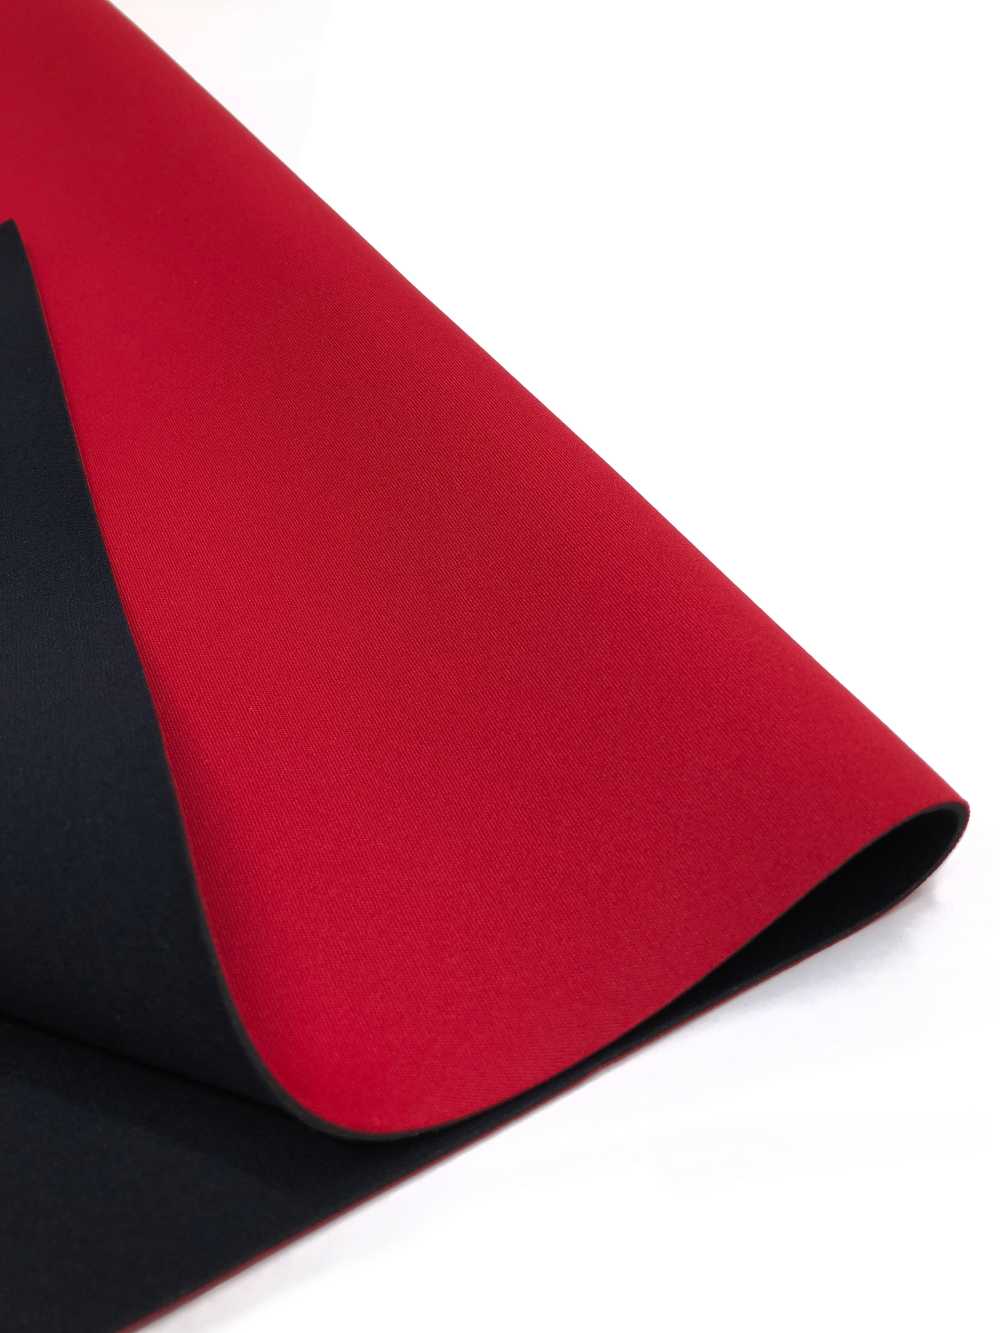 31039 HM AL Red/PS Black 95 × 170cm[Textile / Fabric] Tortoise